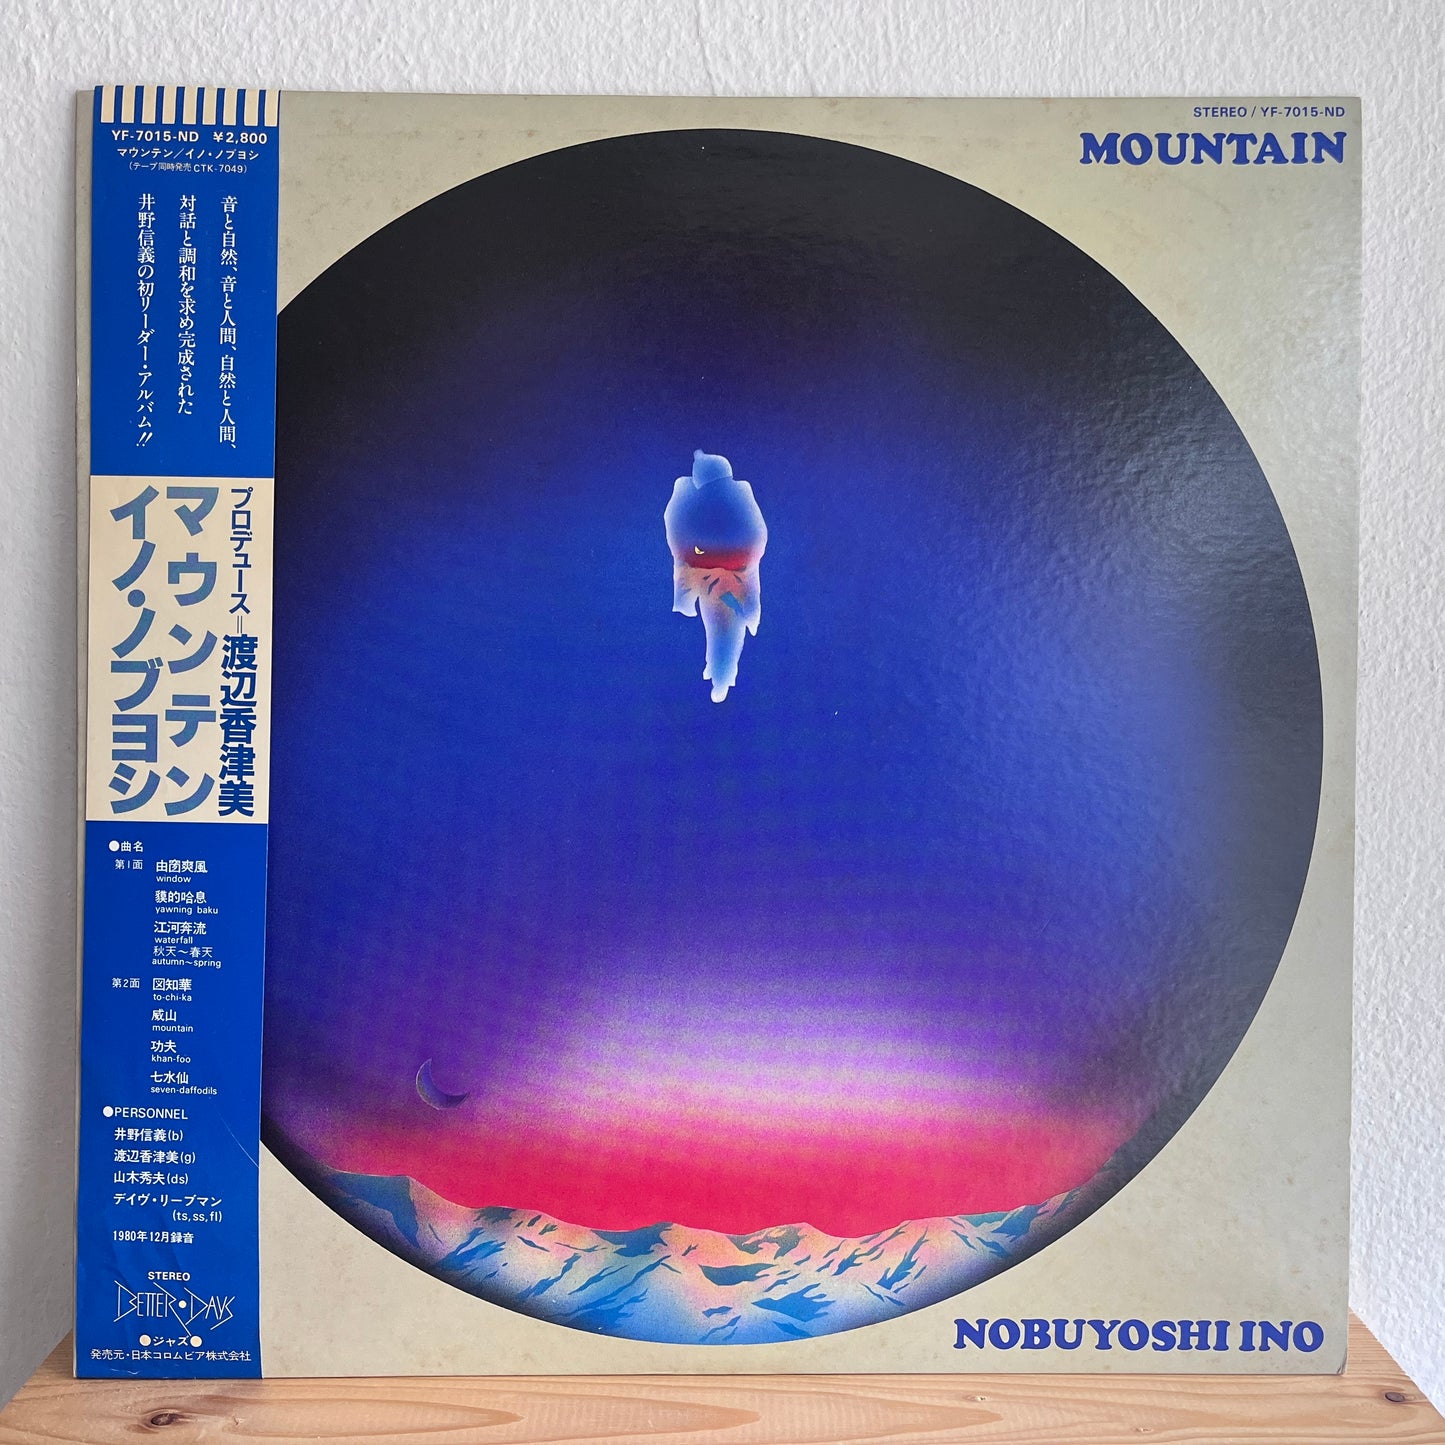 Nobuyoshi Ino – Mountain